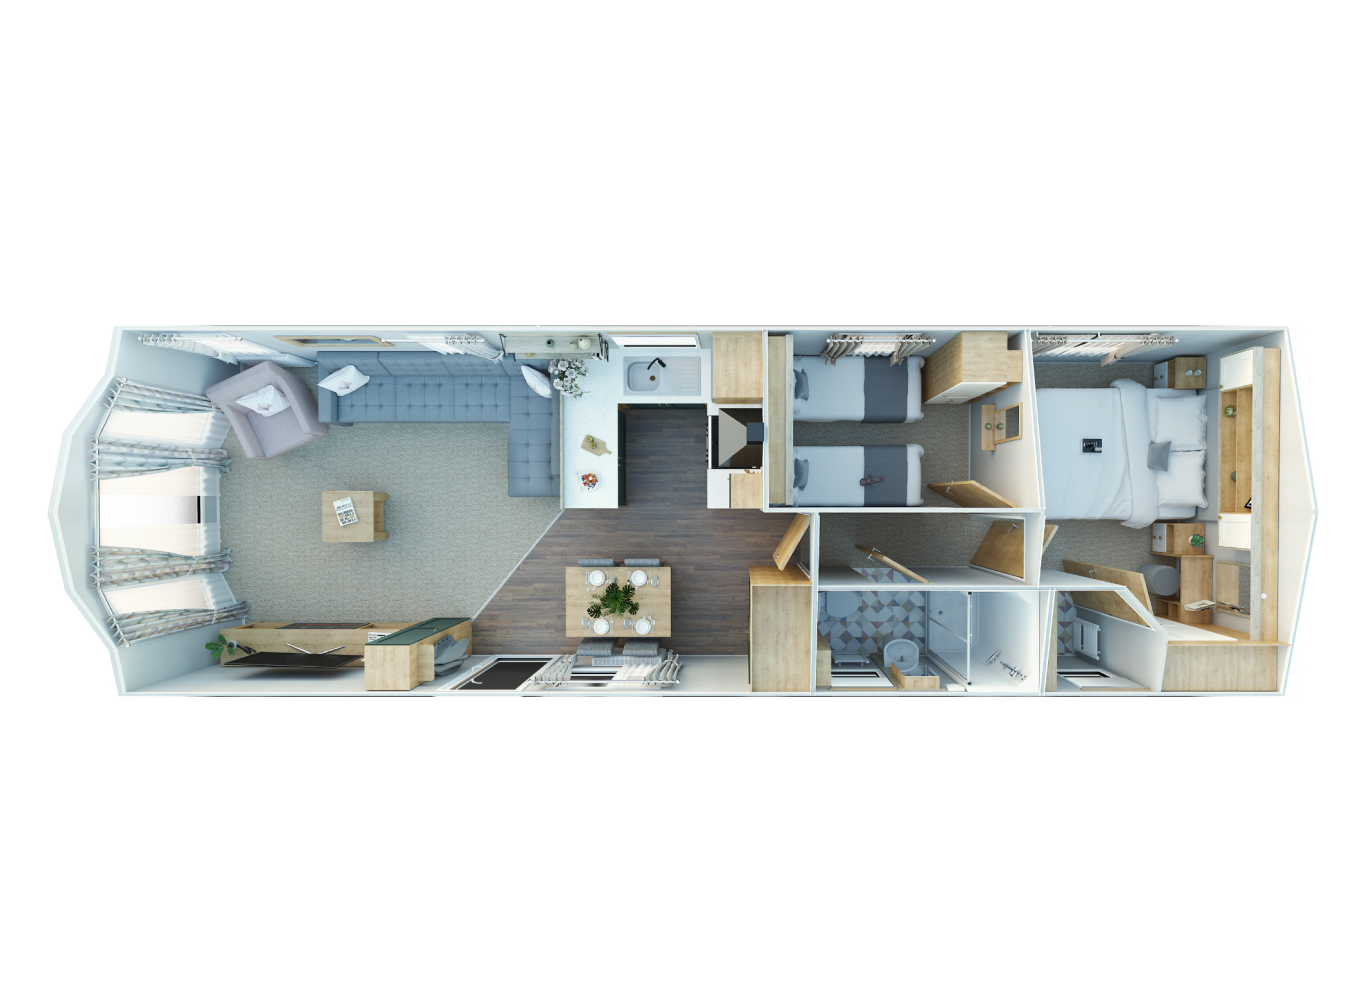 New Willerby Sierra floorplan layout static caravan mobile home 38 x 12 2 bedroom